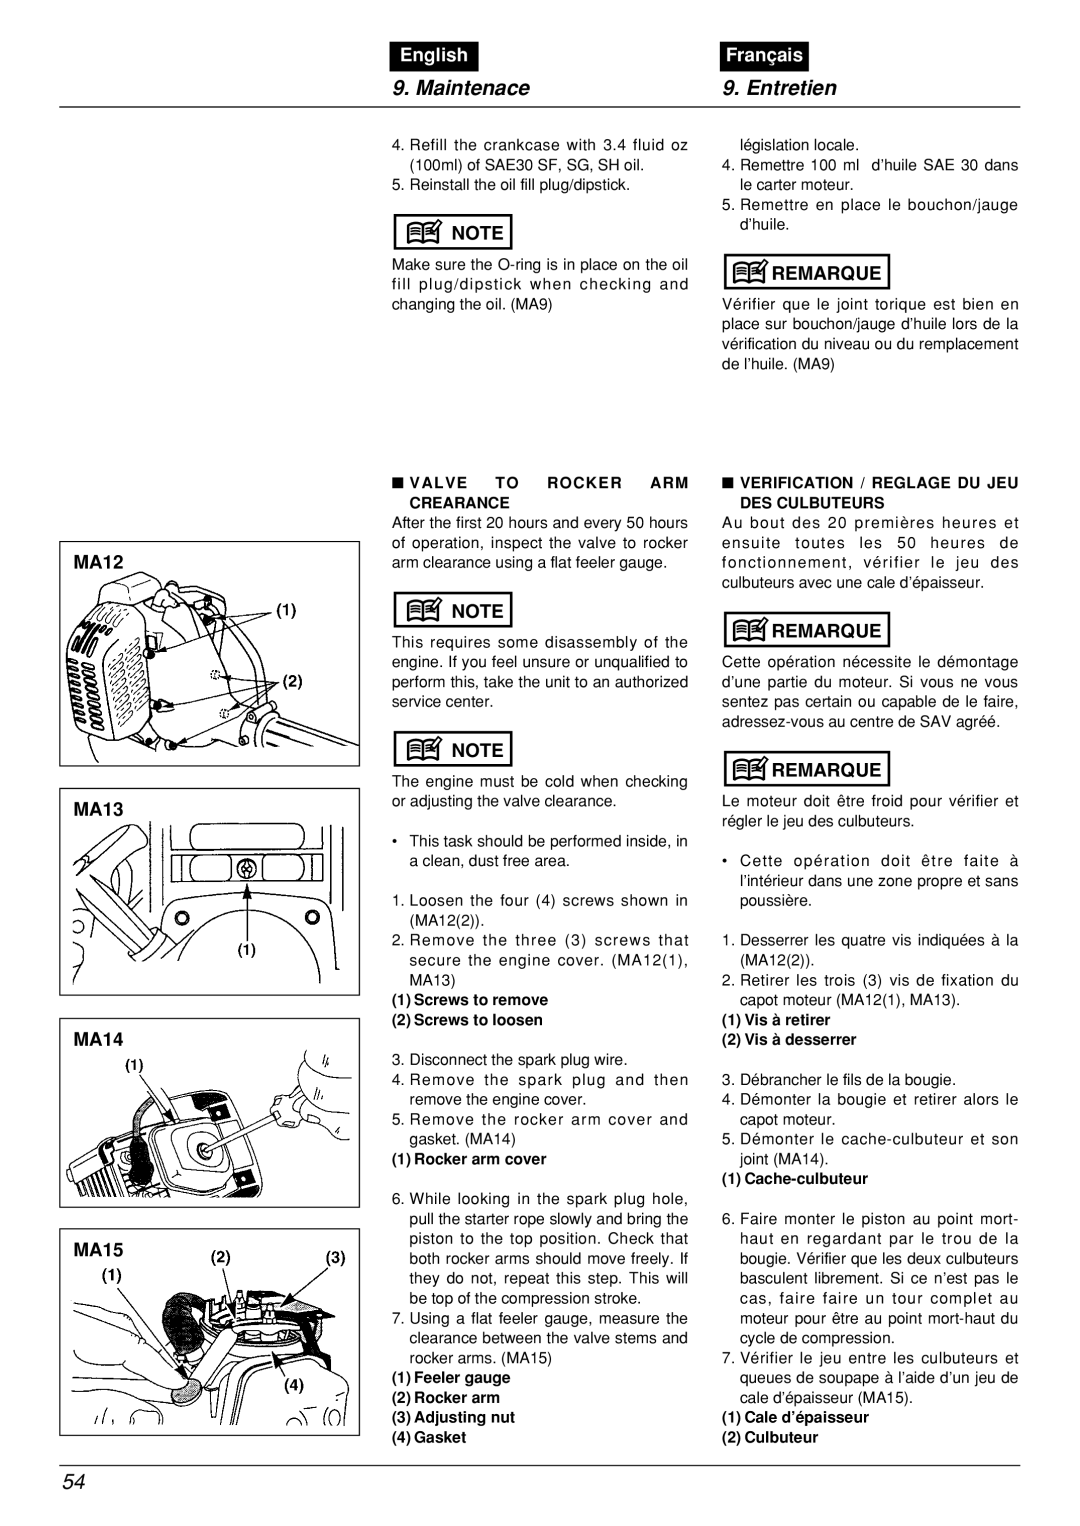 Zenoah BCX2601DL manual Maintenace, Entretien, English, Français, Valve To Rocker Arm 